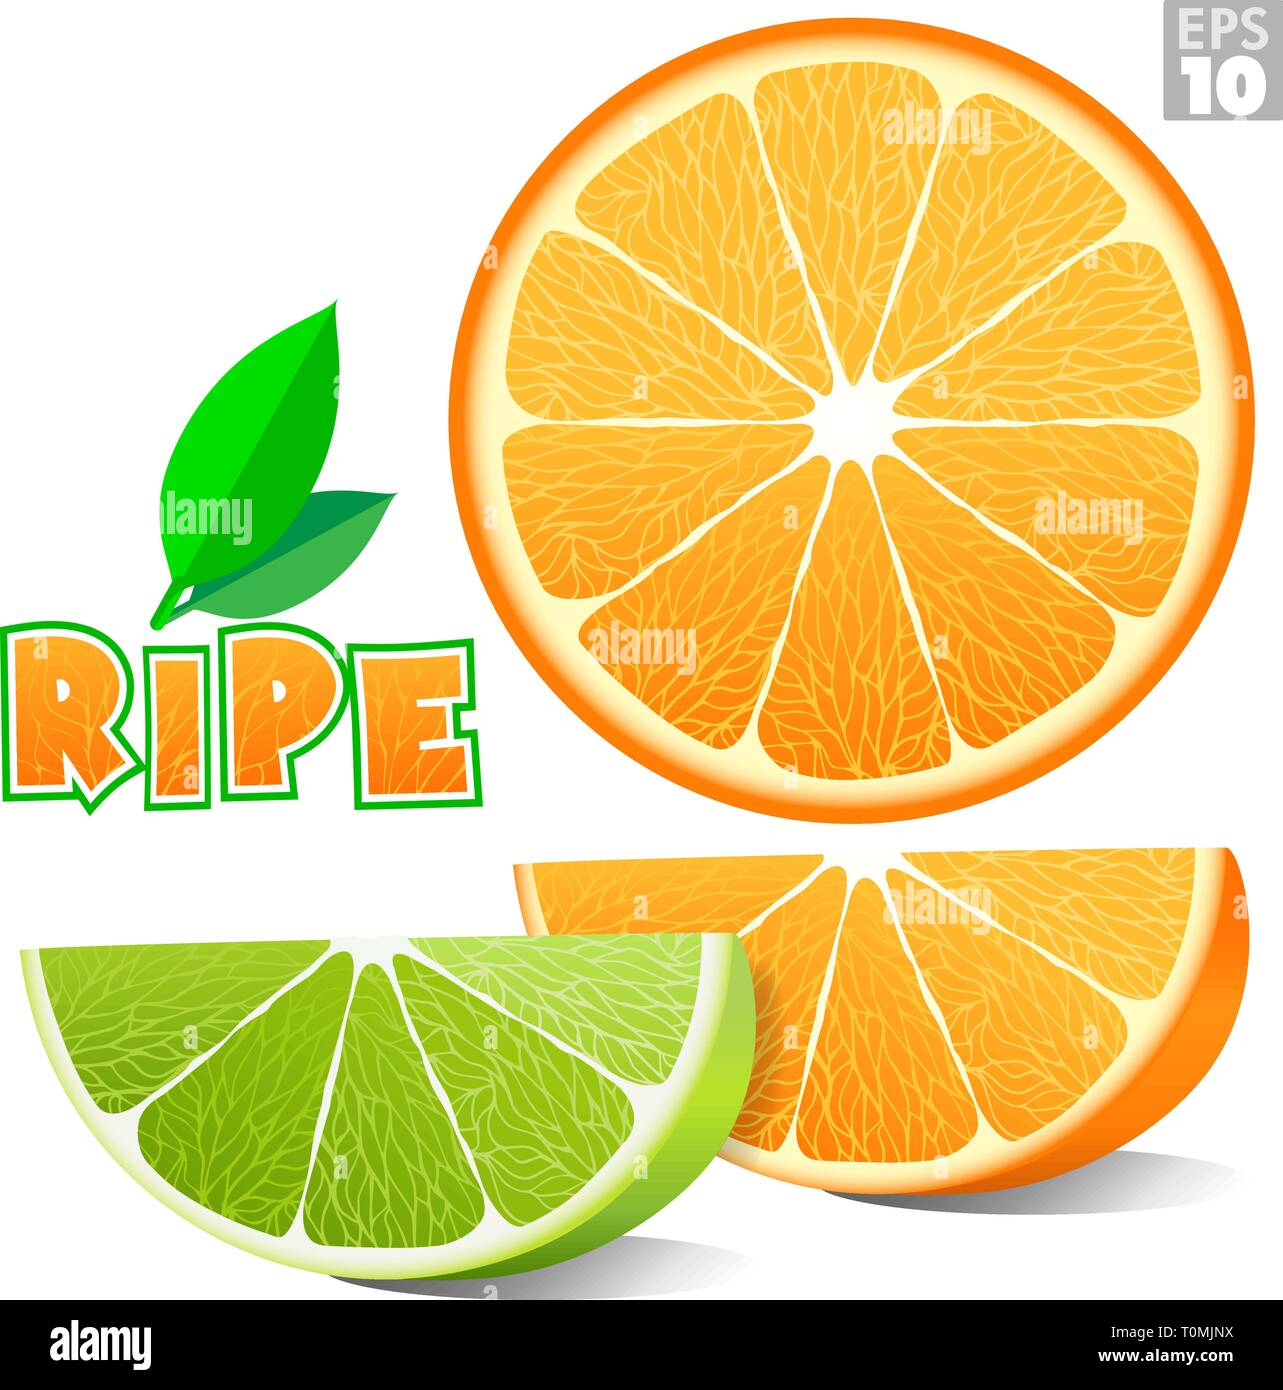 Les agrumes, dont une tranche d'orange, citron vert, mandarine et logo de l'étiquette ripe. Illustration de Vecteur